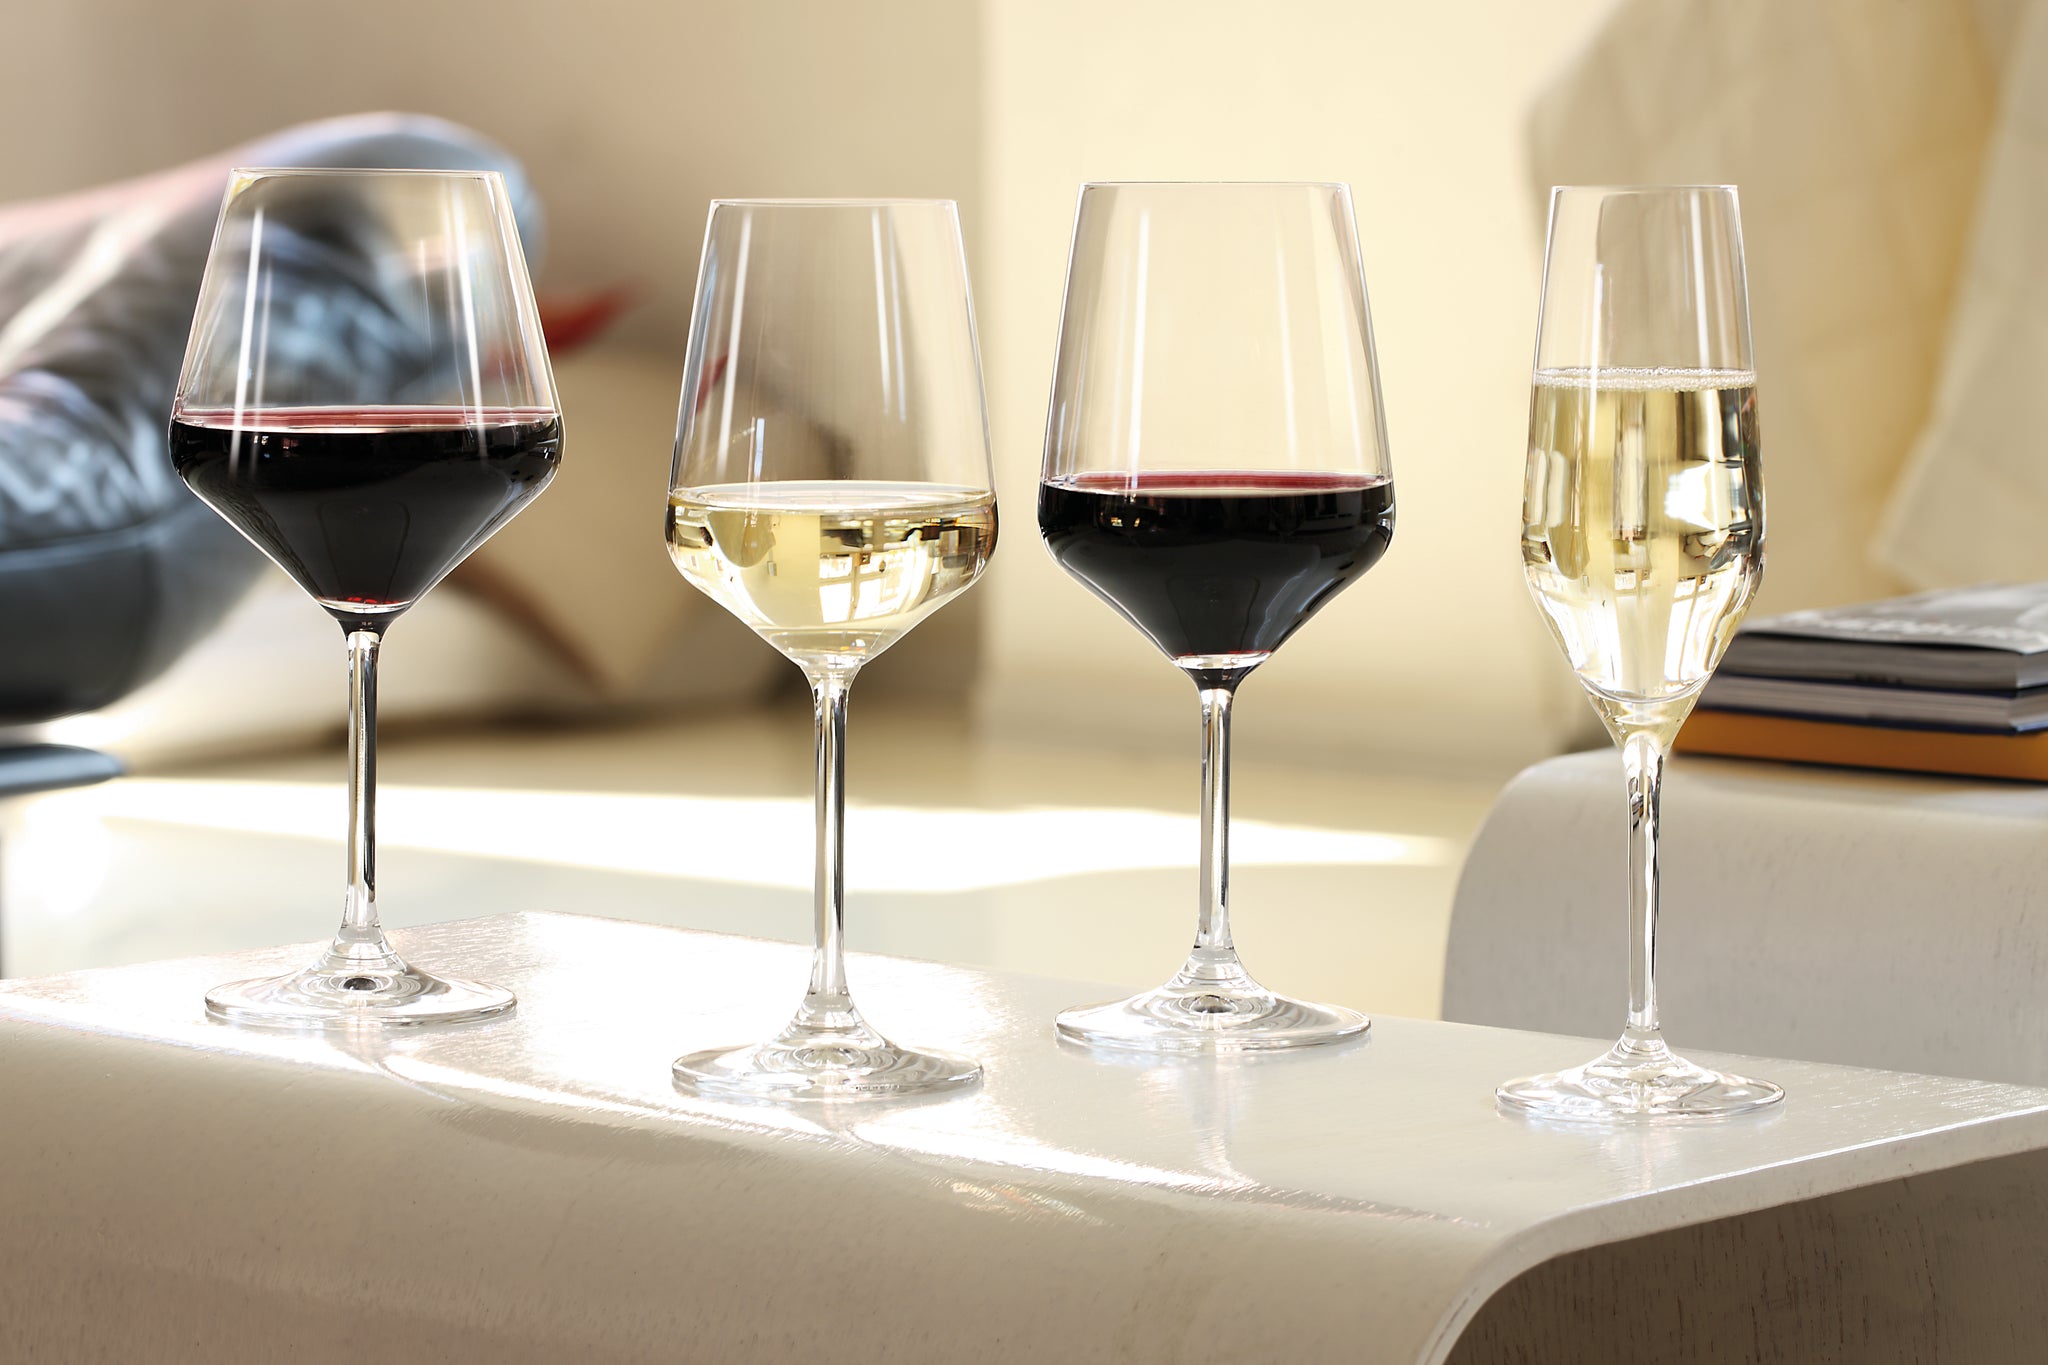 Spiegelau Definition Universal Wine Glasses, Set of 2 – Sol le Luna Concepts